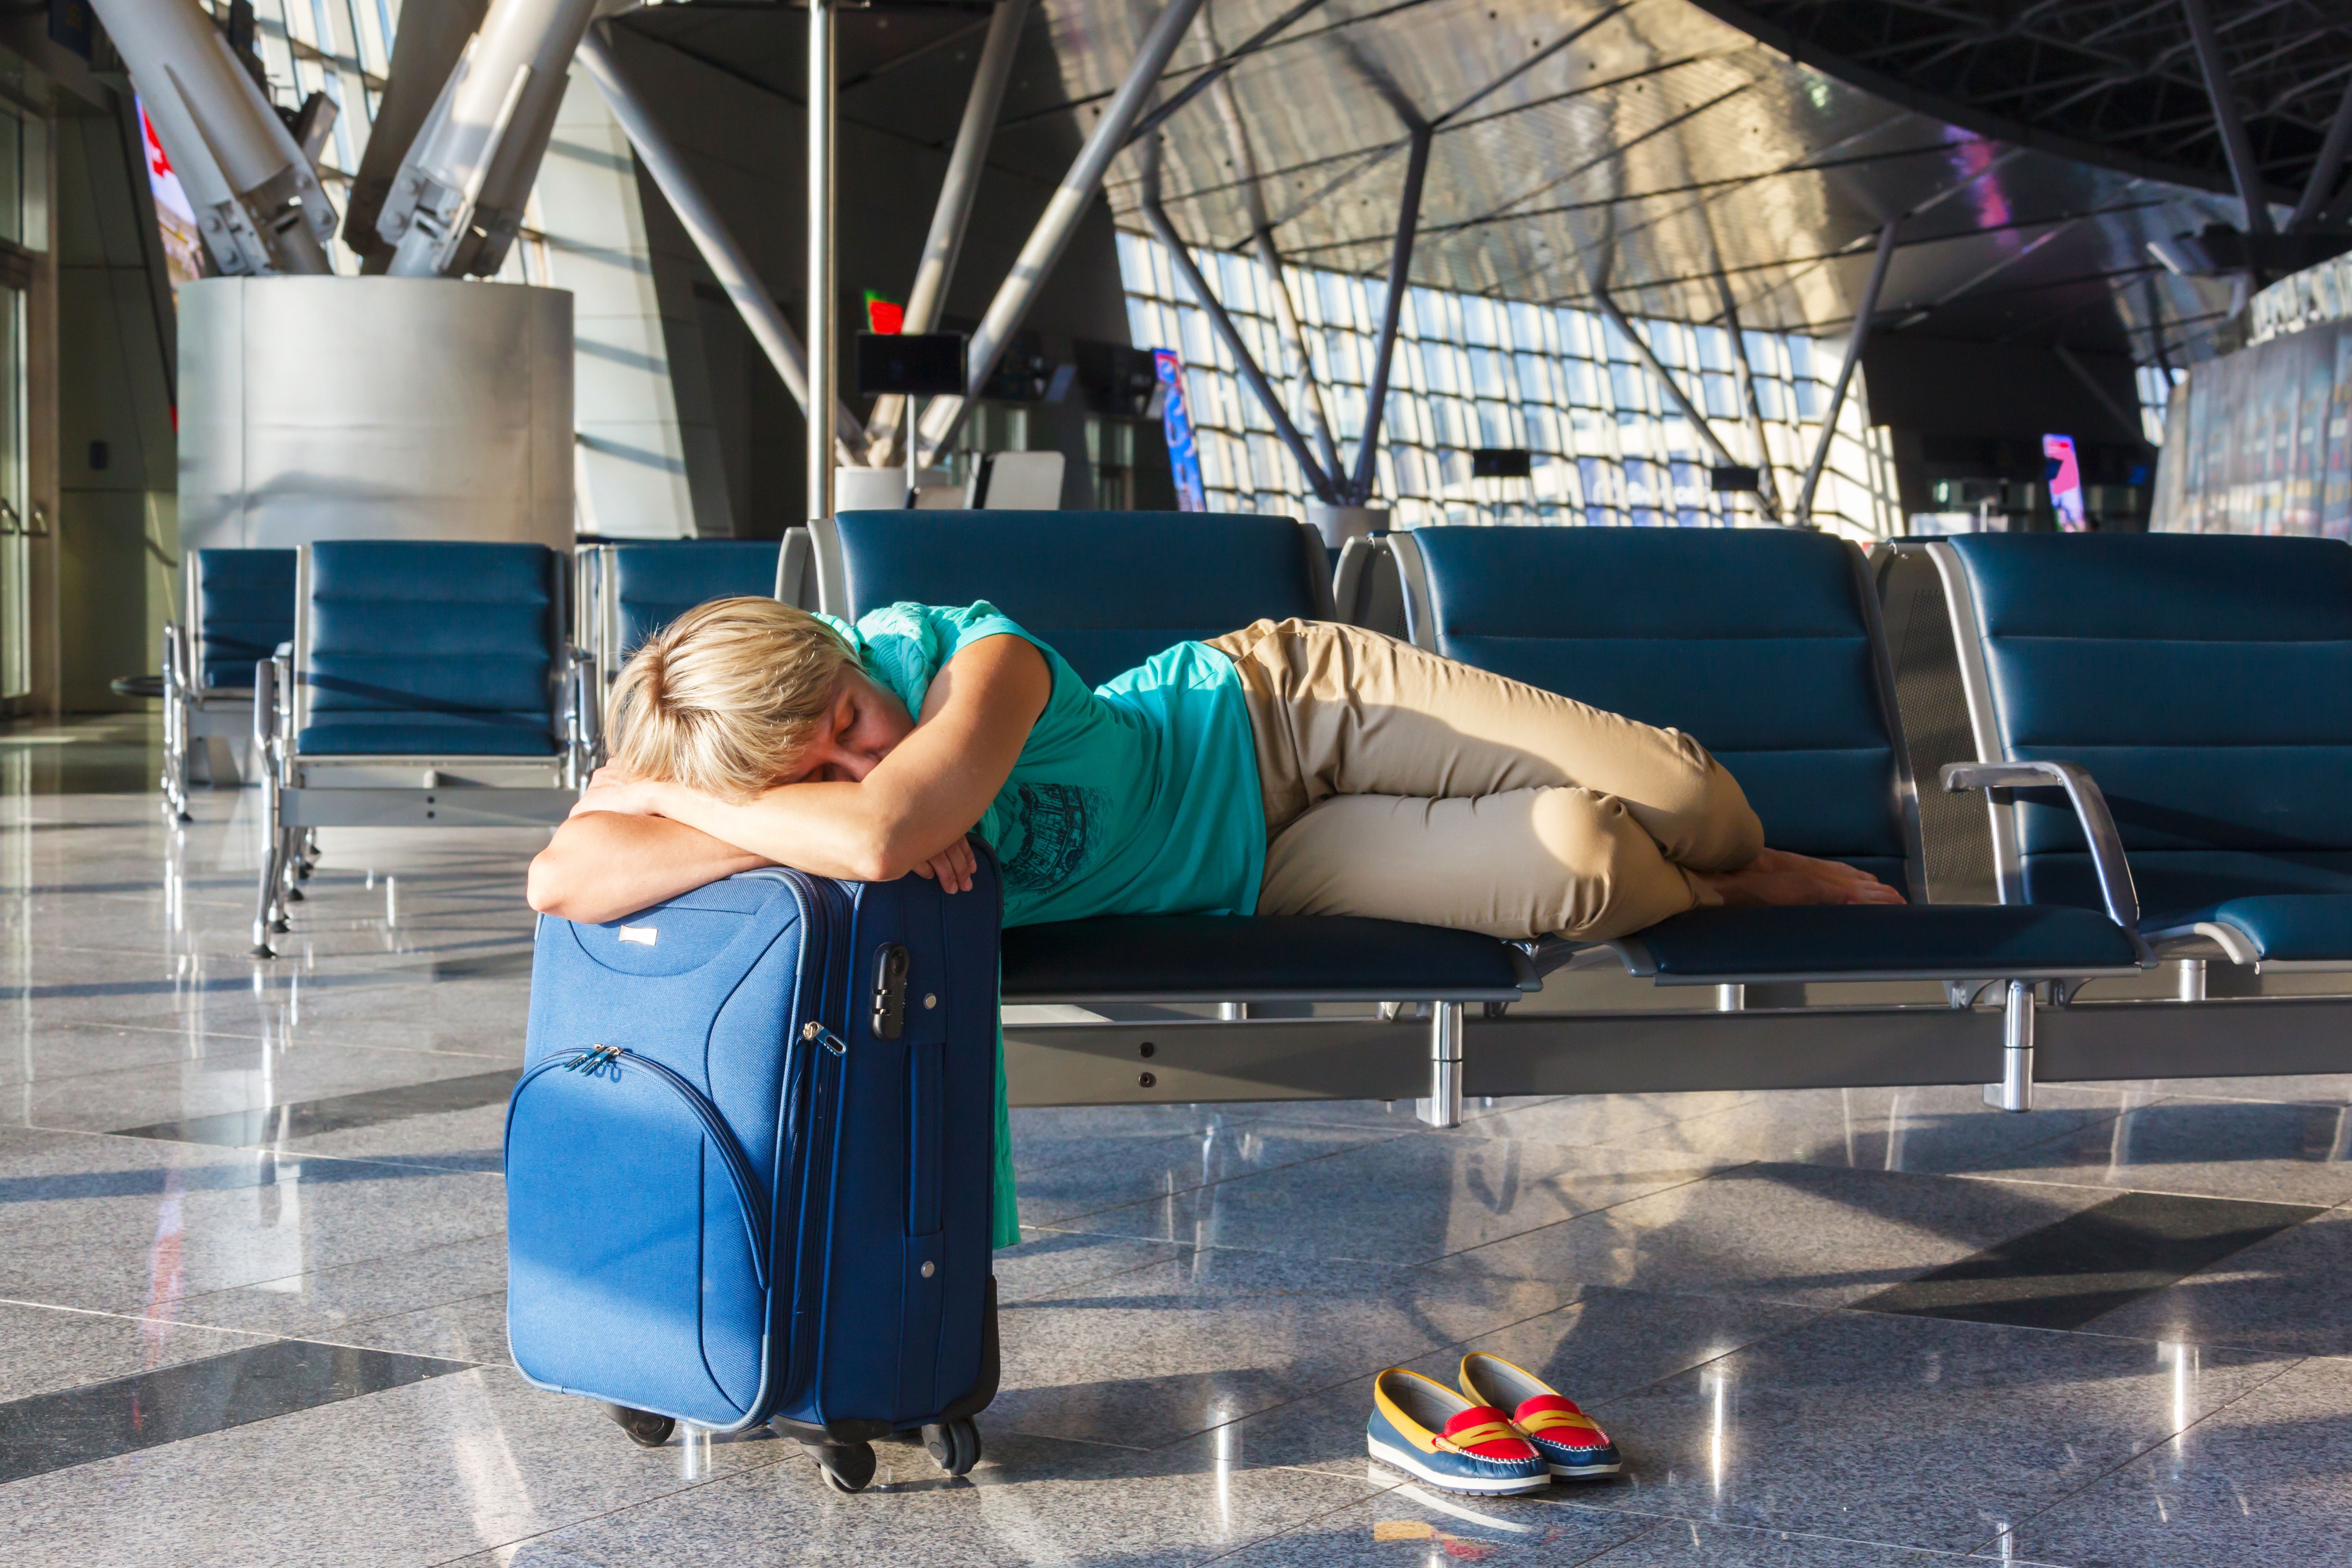 A passenger sleeping in an airport.